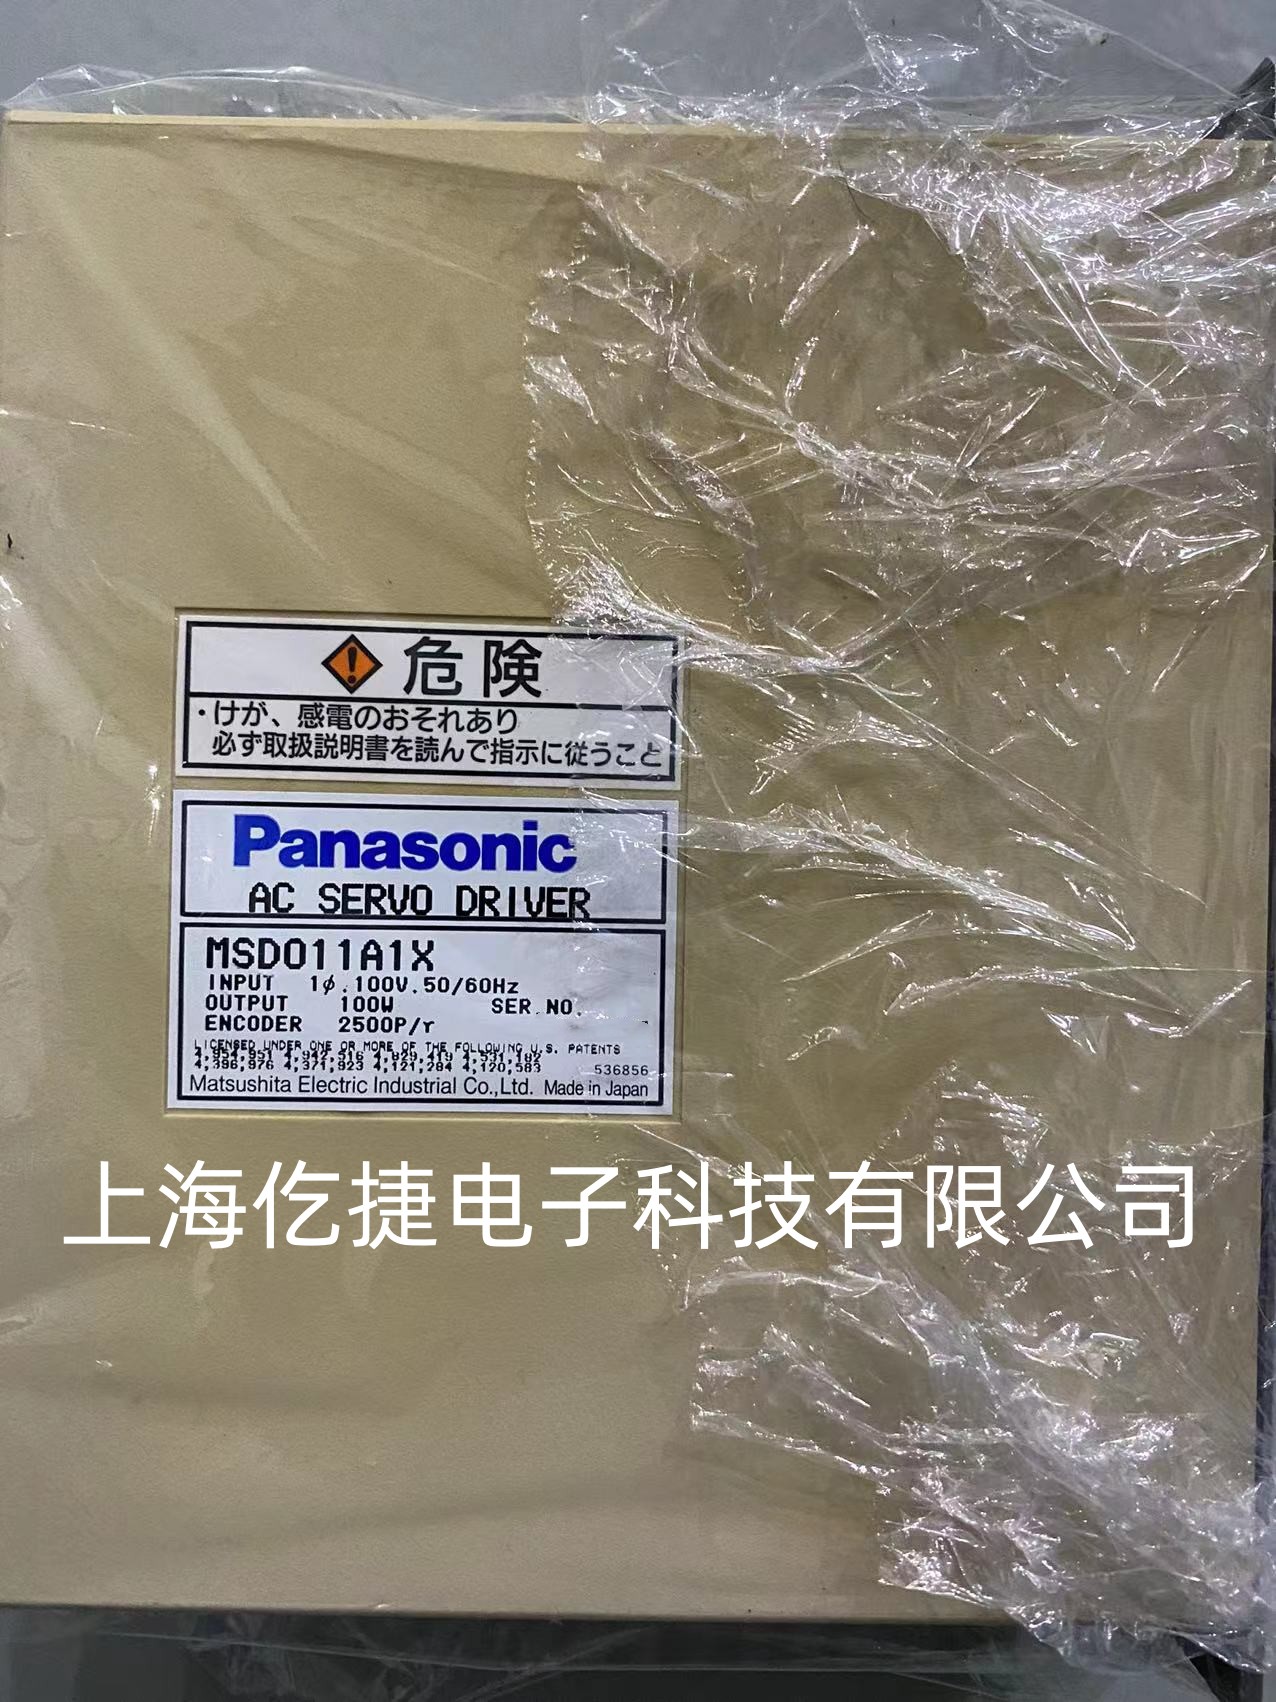 黄石Panasonic松下驱动器故障维修MSD011A1XX21